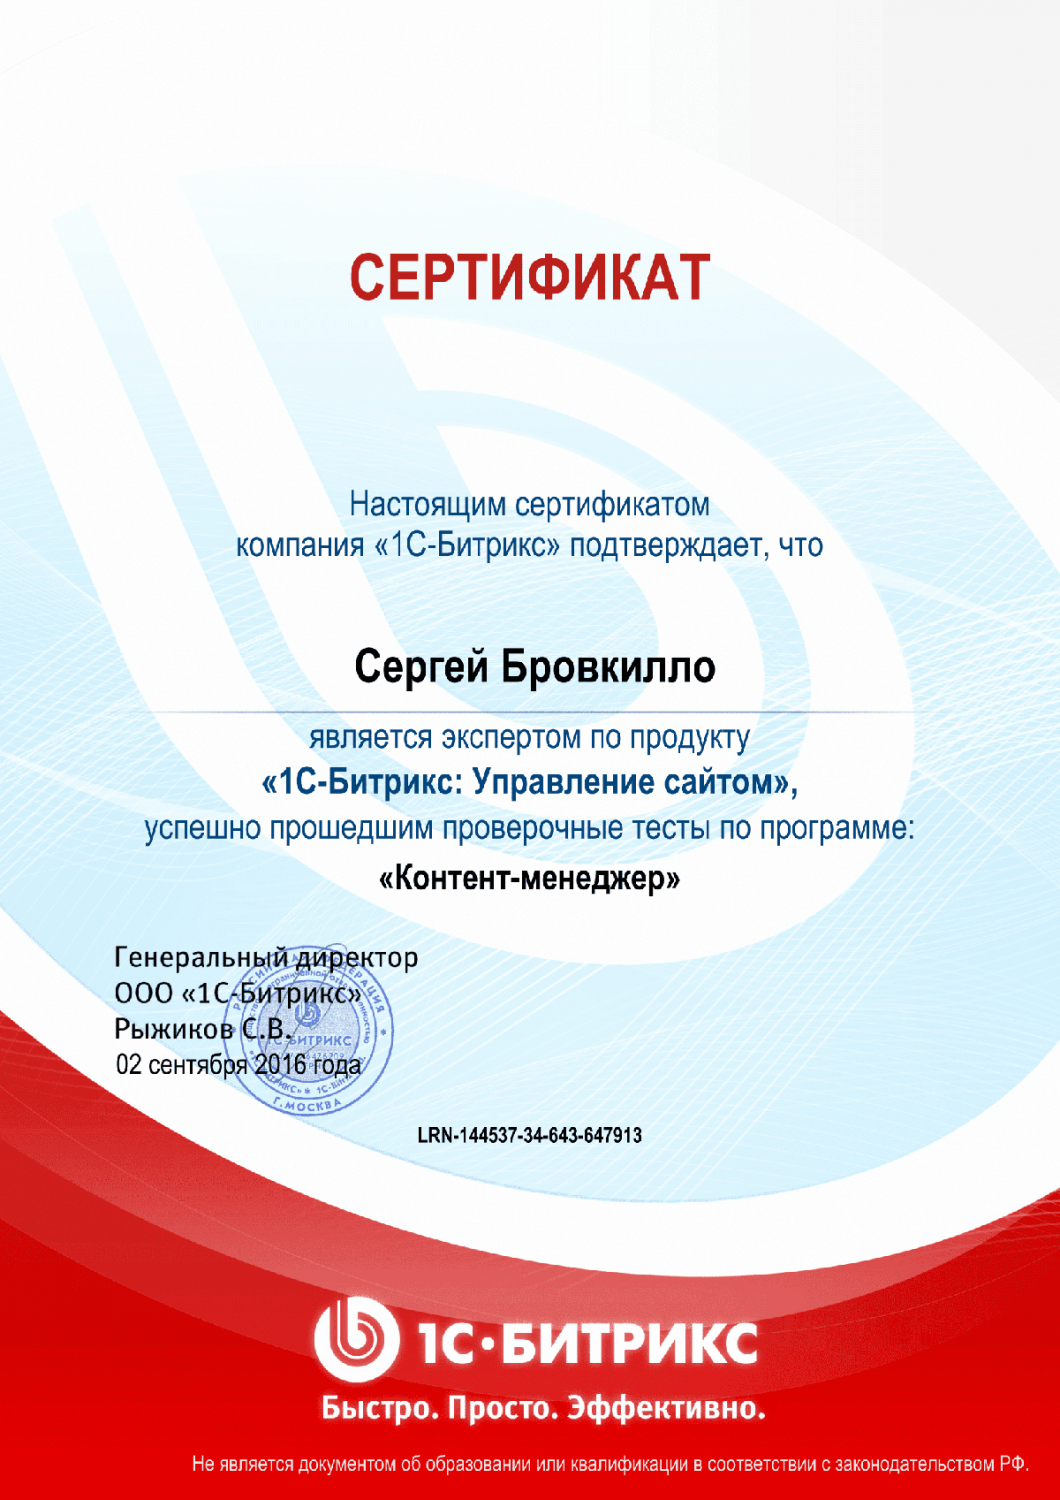 Сертификат эксперта по программе "Контент-менеджер"" в Смоленска